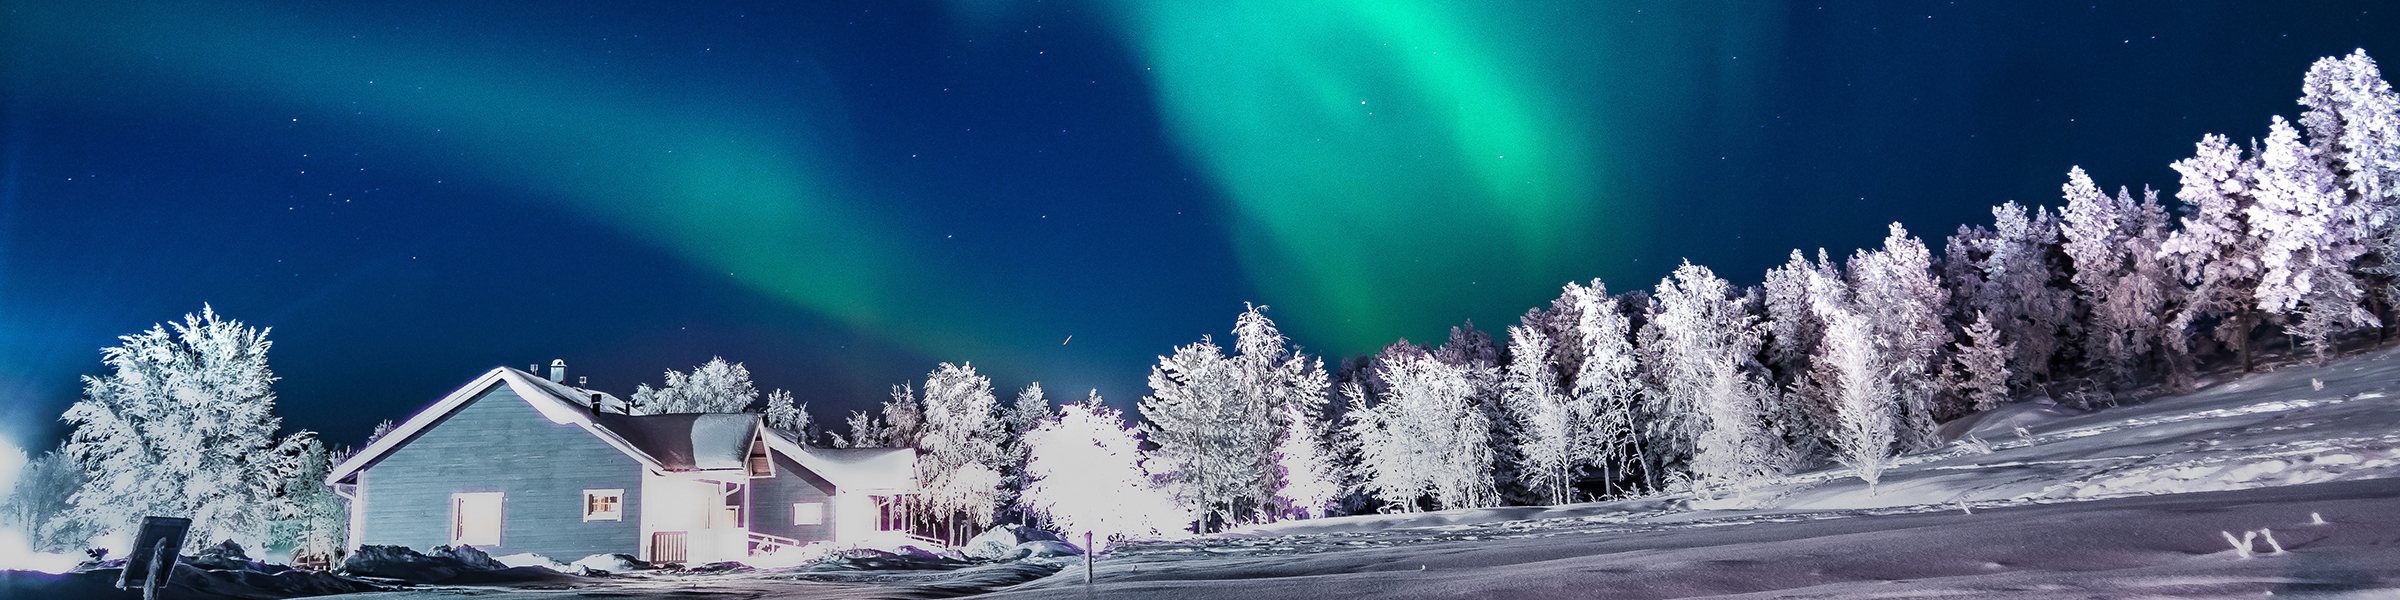 Finland Aurora Borealis in Lapland